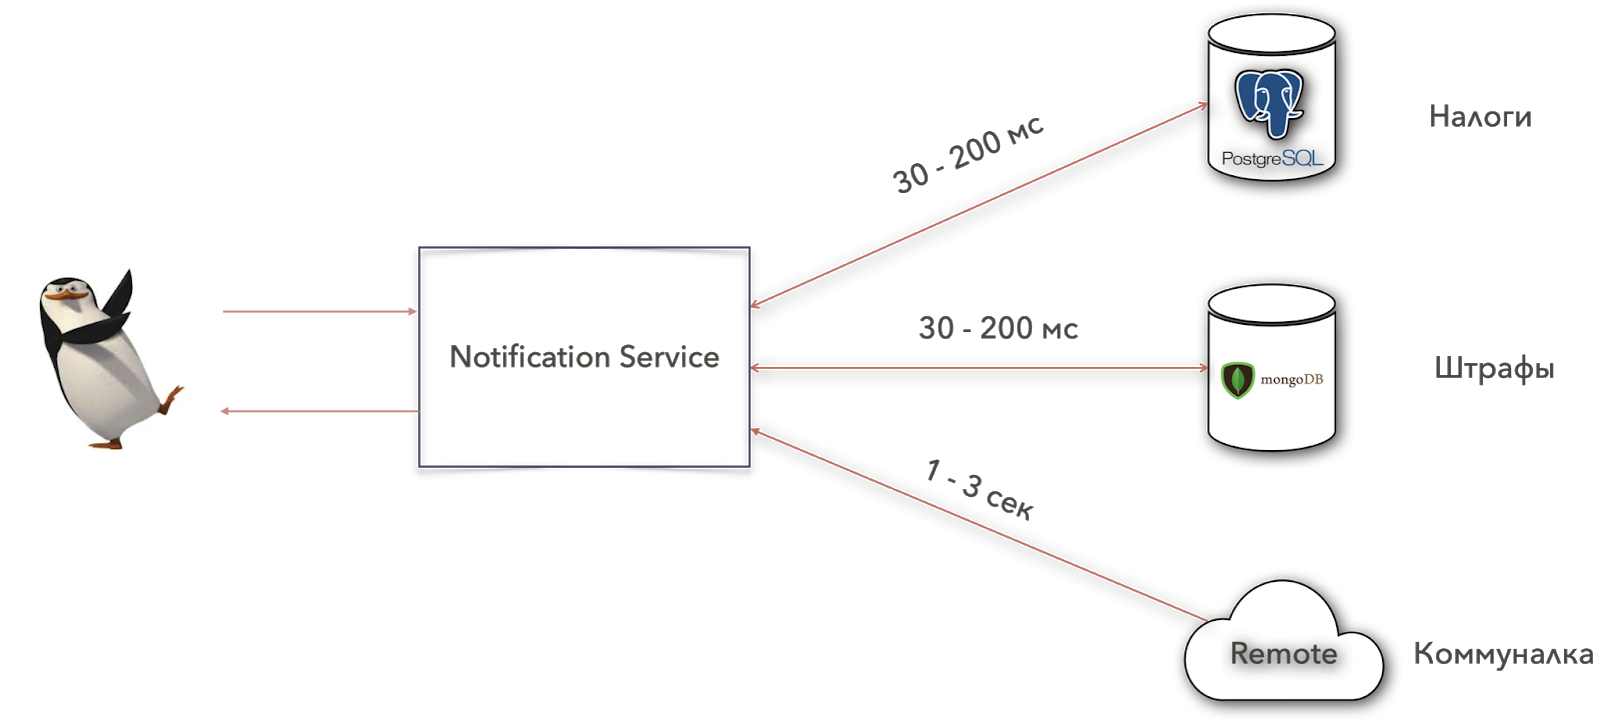 Схема сервиса для уведомления пользователя о штрафах, налогах и коммунальных платежах (Notification Service)